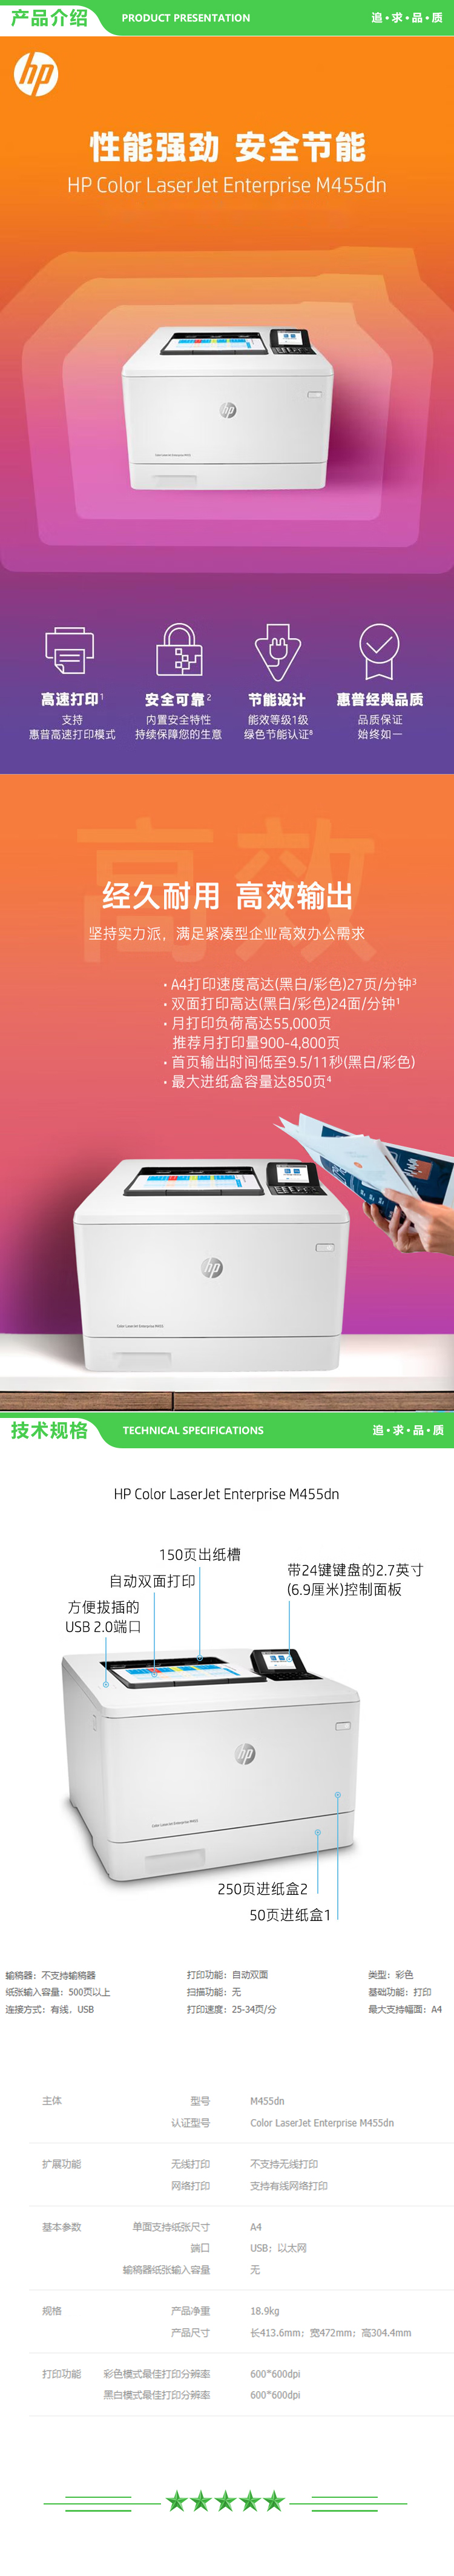 惠普 HP Color LaserJet Enterprise M455dn A4彩色激光打印机 27页 2.jpg